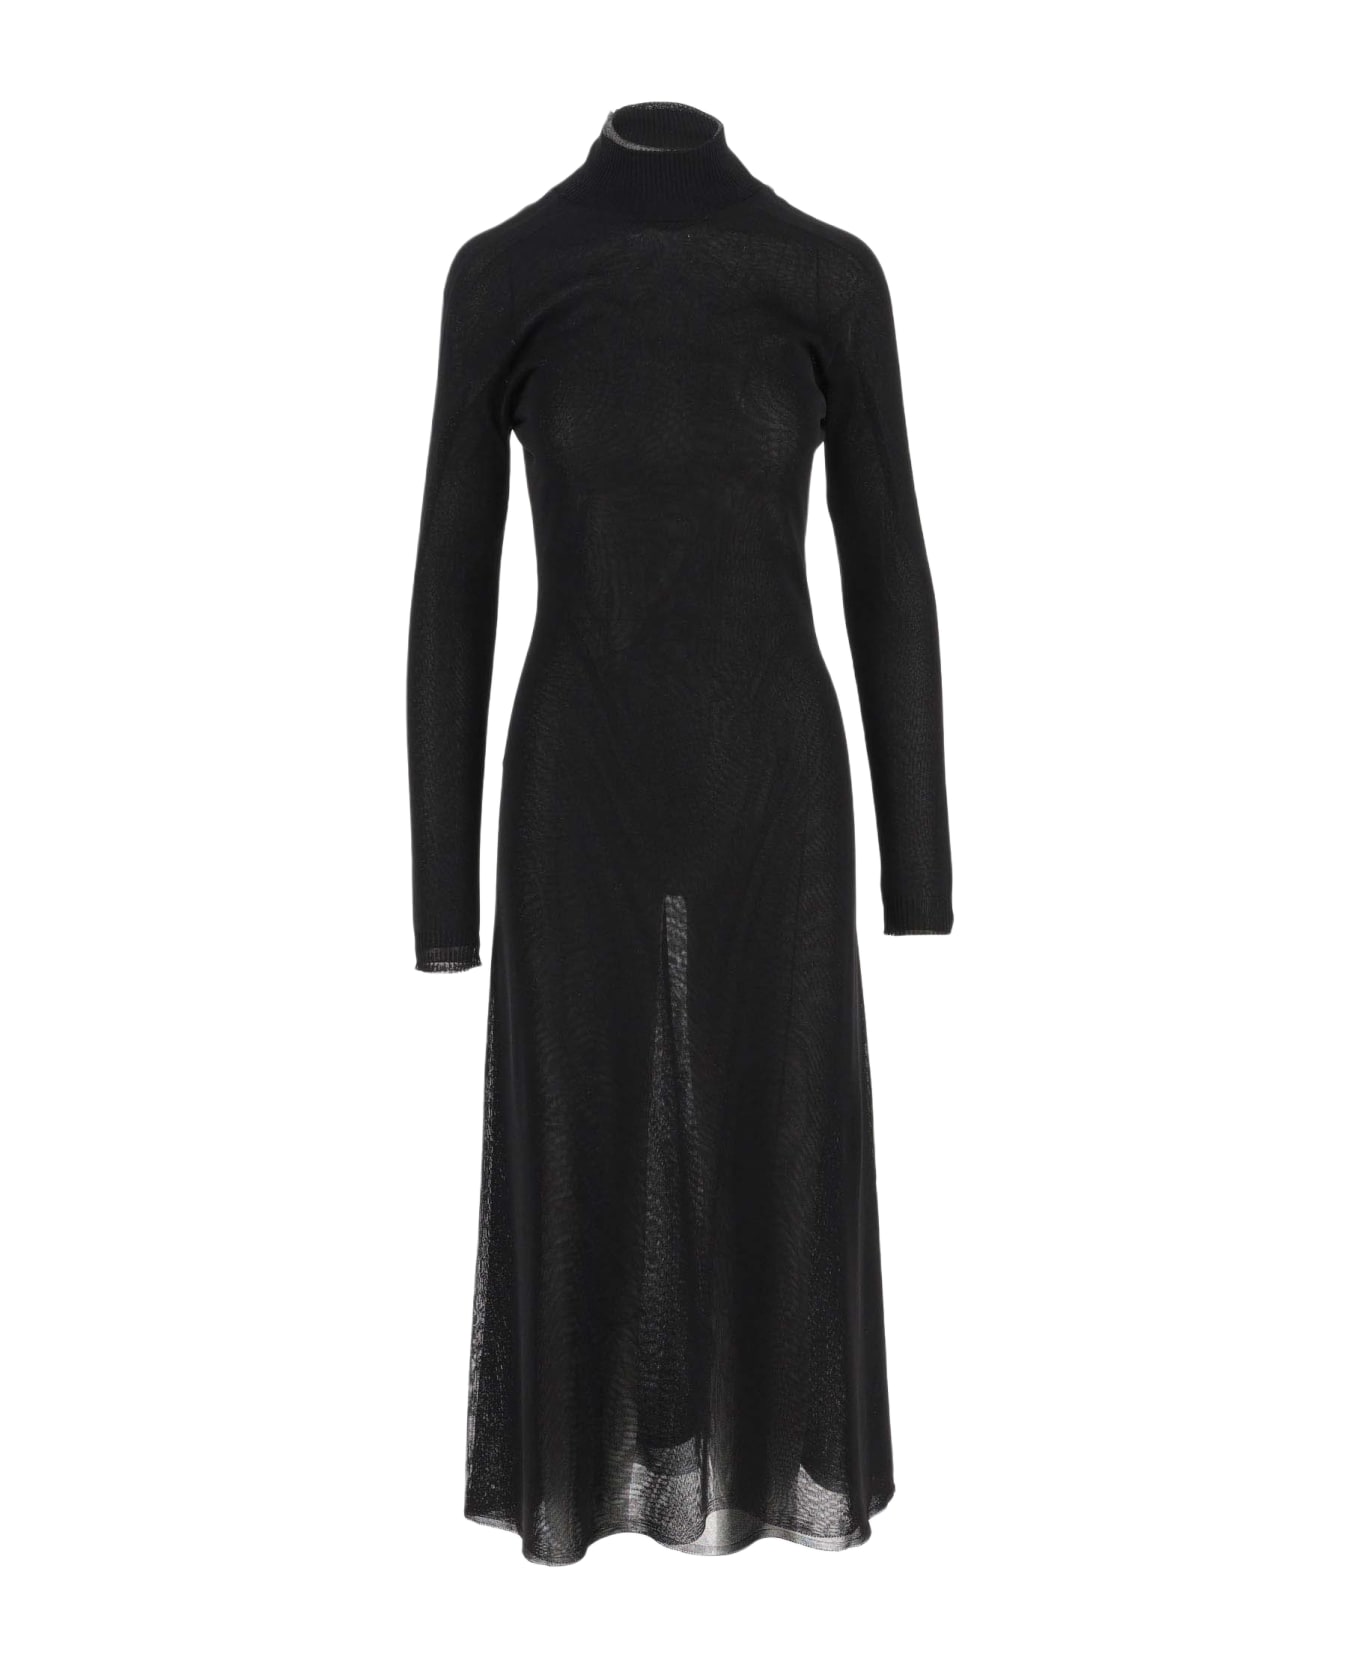 Giorgio Armani Brilliant Knit Longuette Dress - Black